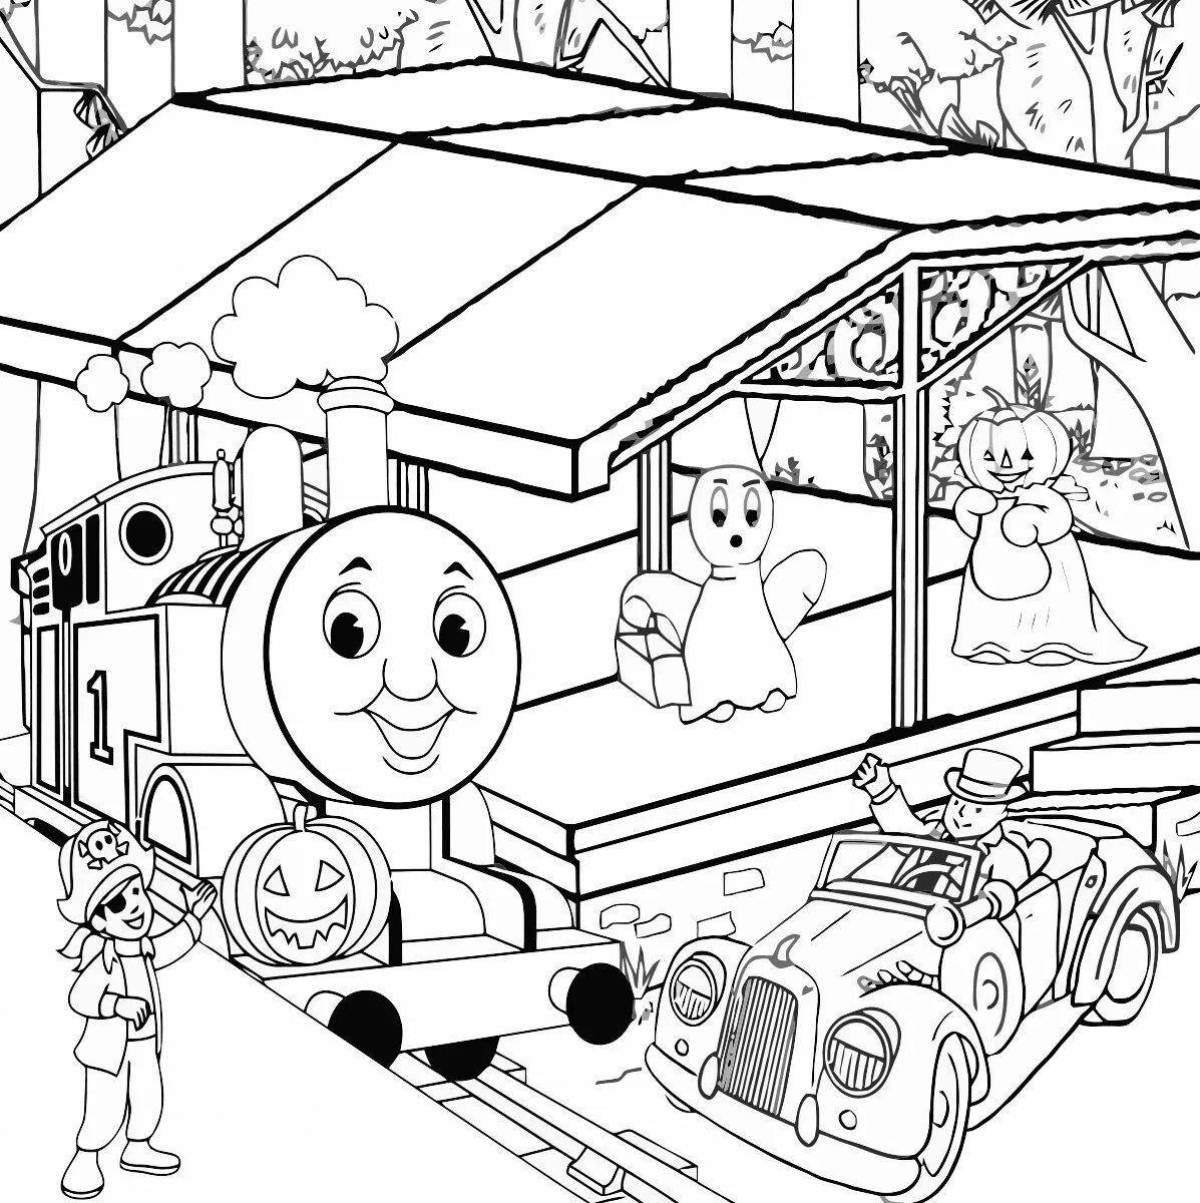 Креативная раскраска поезда томаса